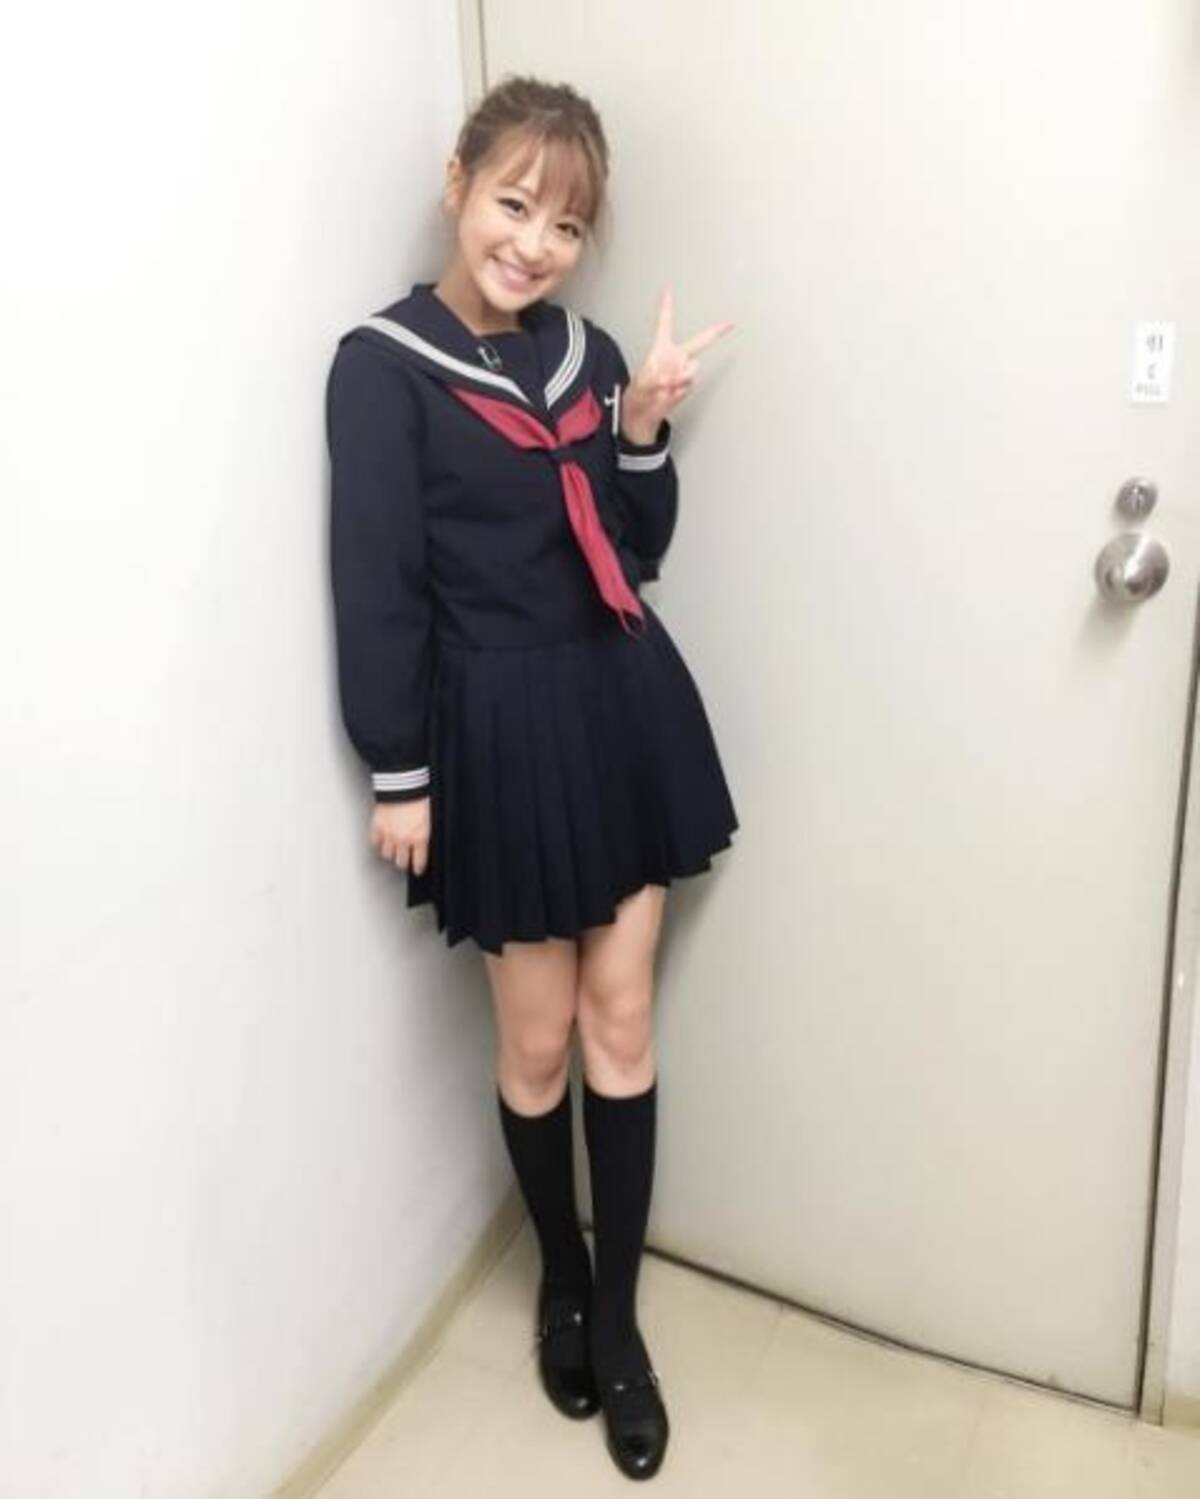 鈴木奈々の セーラー服 姿がまるで現役女子高生 そのまま学校へ行けるよ の声も 16年8月29日 エキサイトニュース